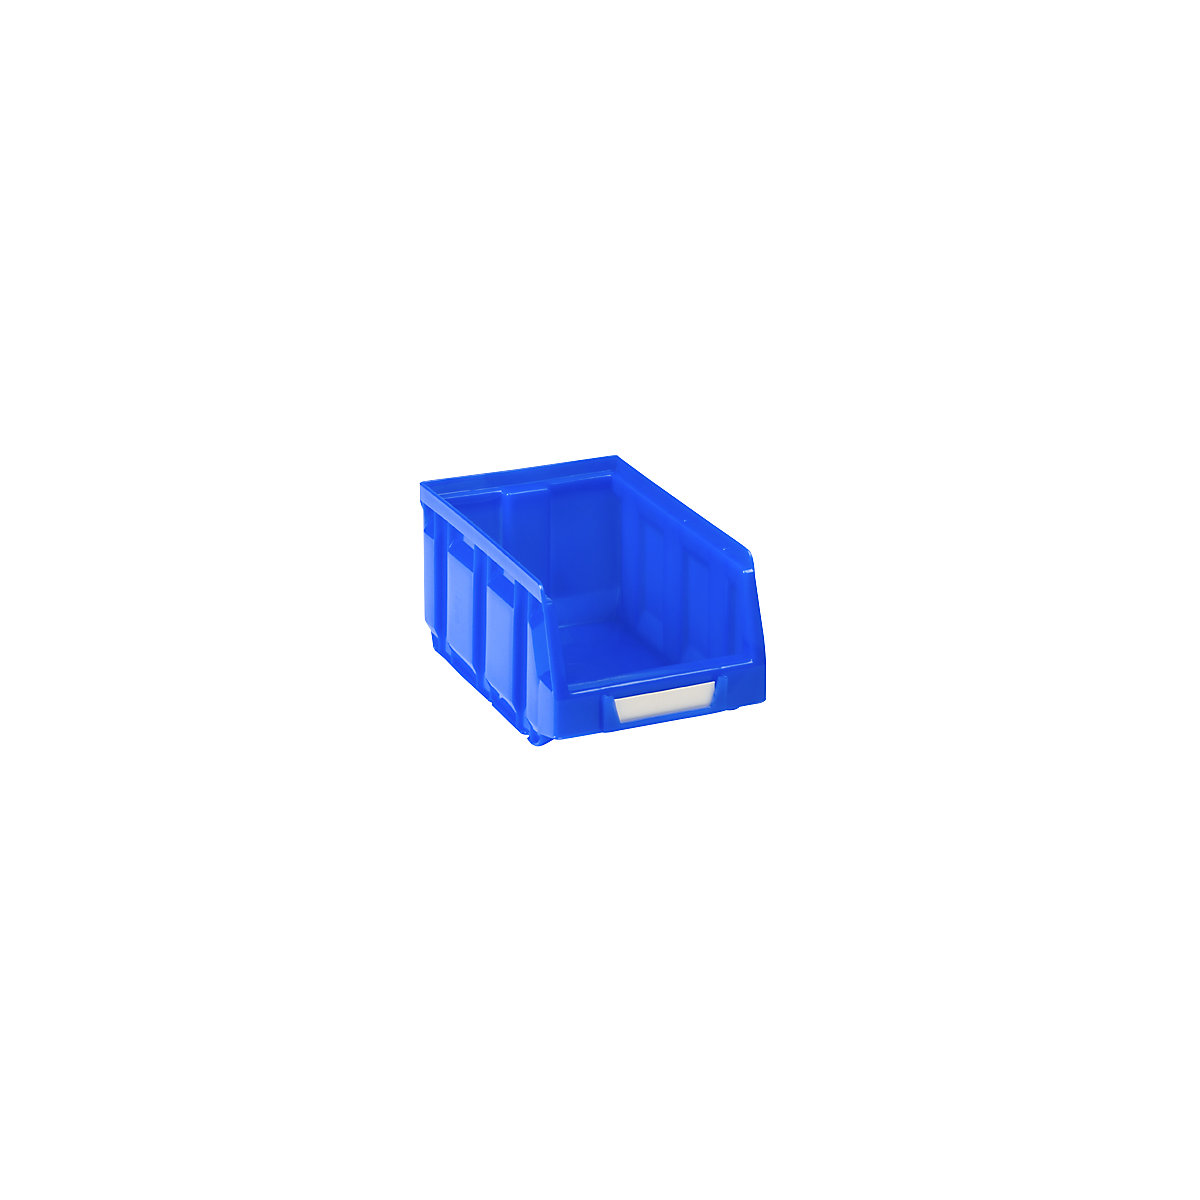 Sichtlagerkasten aus Polyethylen, LxBxH 167 x 105 x 82 mm, blau, VE 48 Stk-9